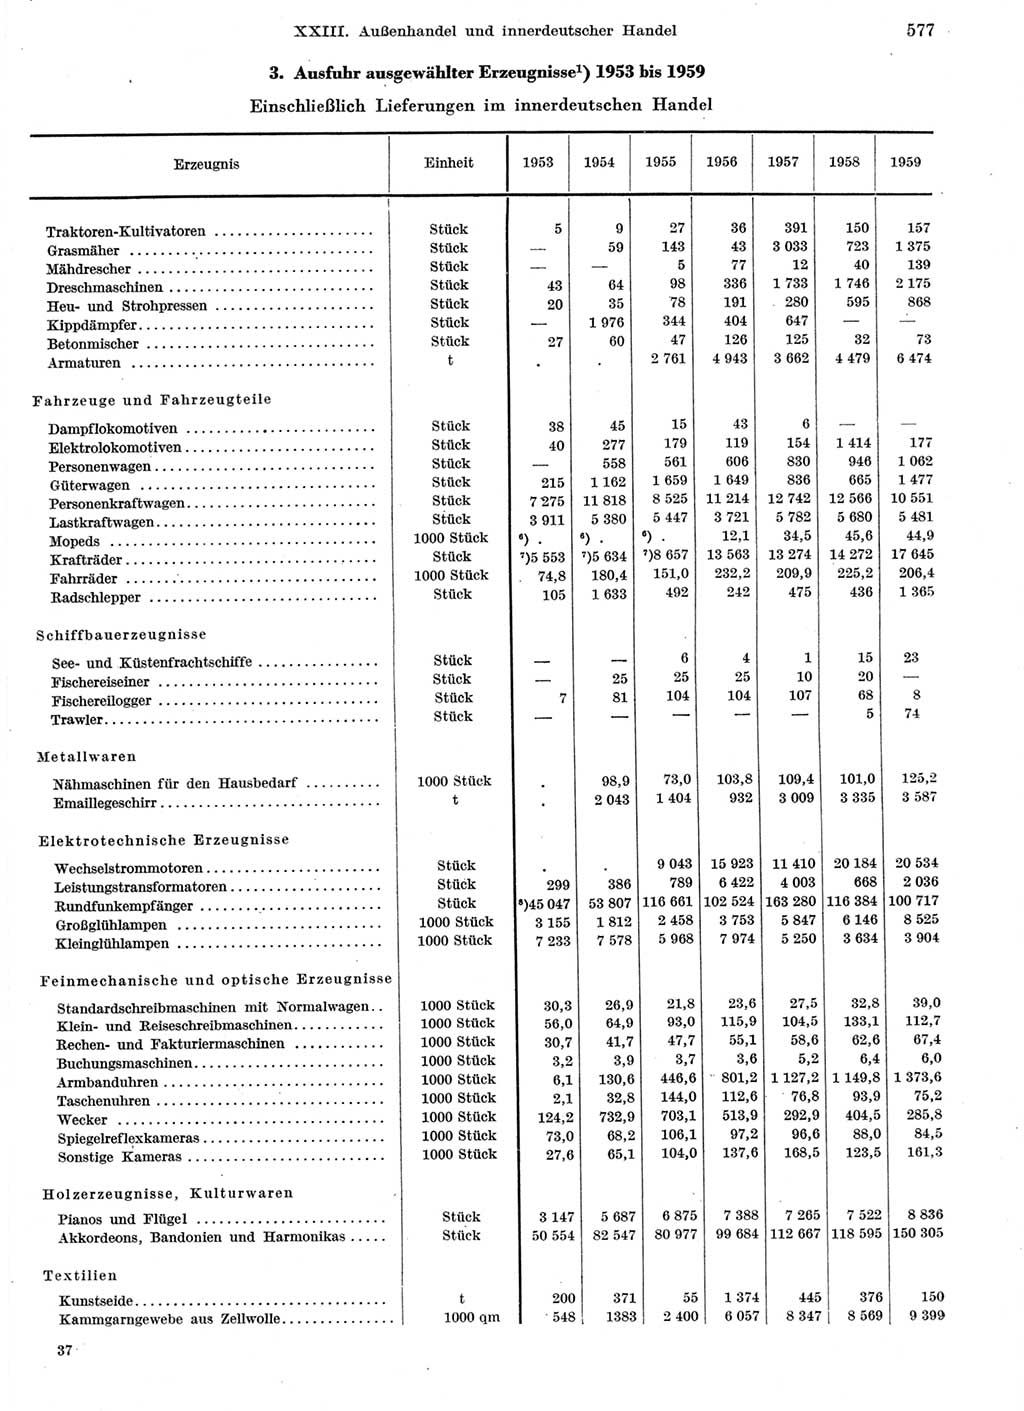 Statistisches Jahrbuch der Deutschen Demokratischen Republik (DDR) 1959, Seite 577 (Stat. Jb. DDR 1959, S. 577)